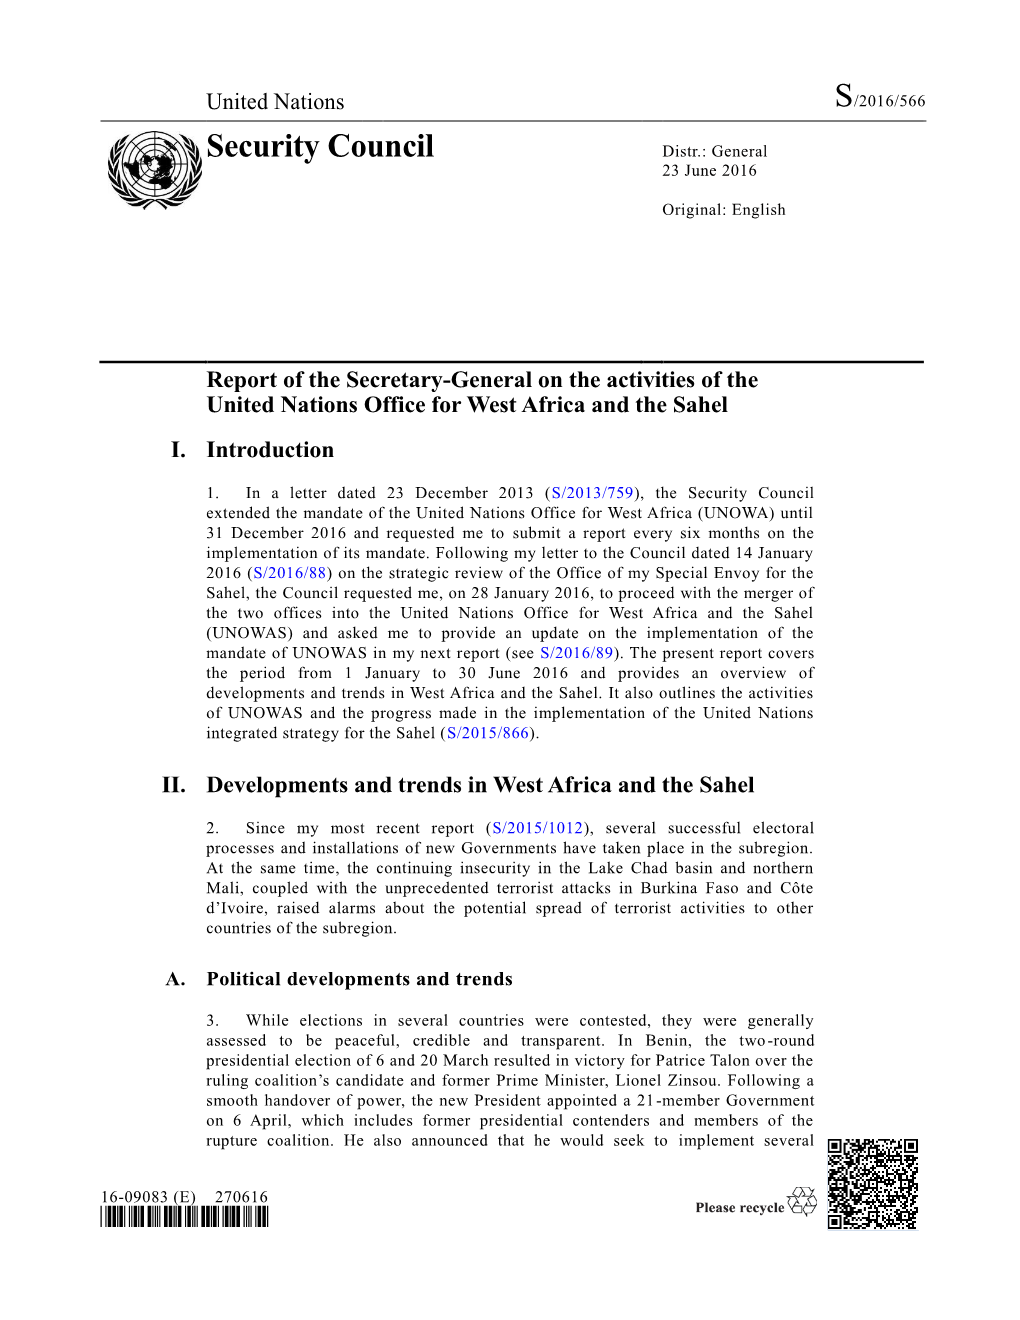 UNOWAS Report